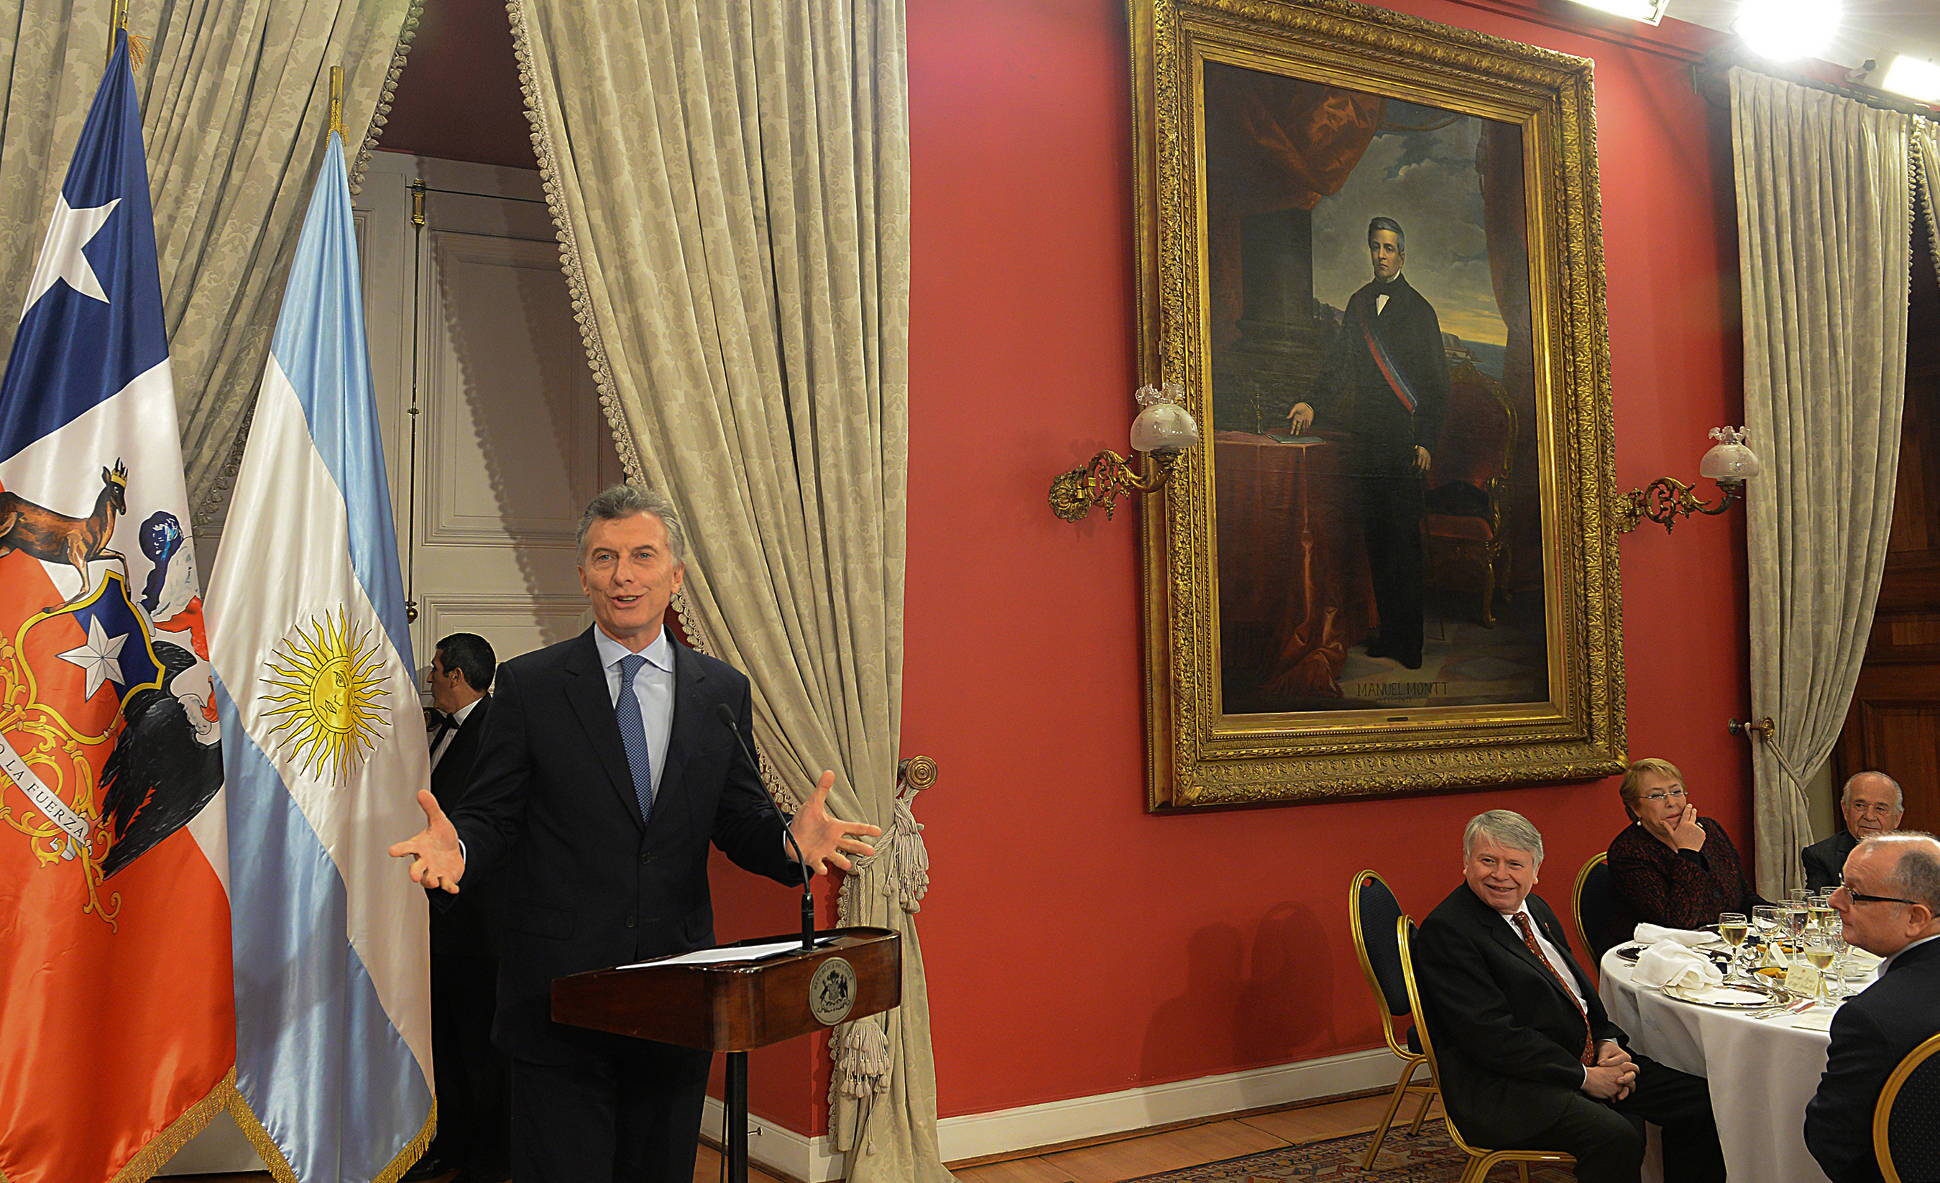 Macri y Bachelet ratificaron el compromiso de seguir trabajando juntos para fortalecer y ampliar la integración